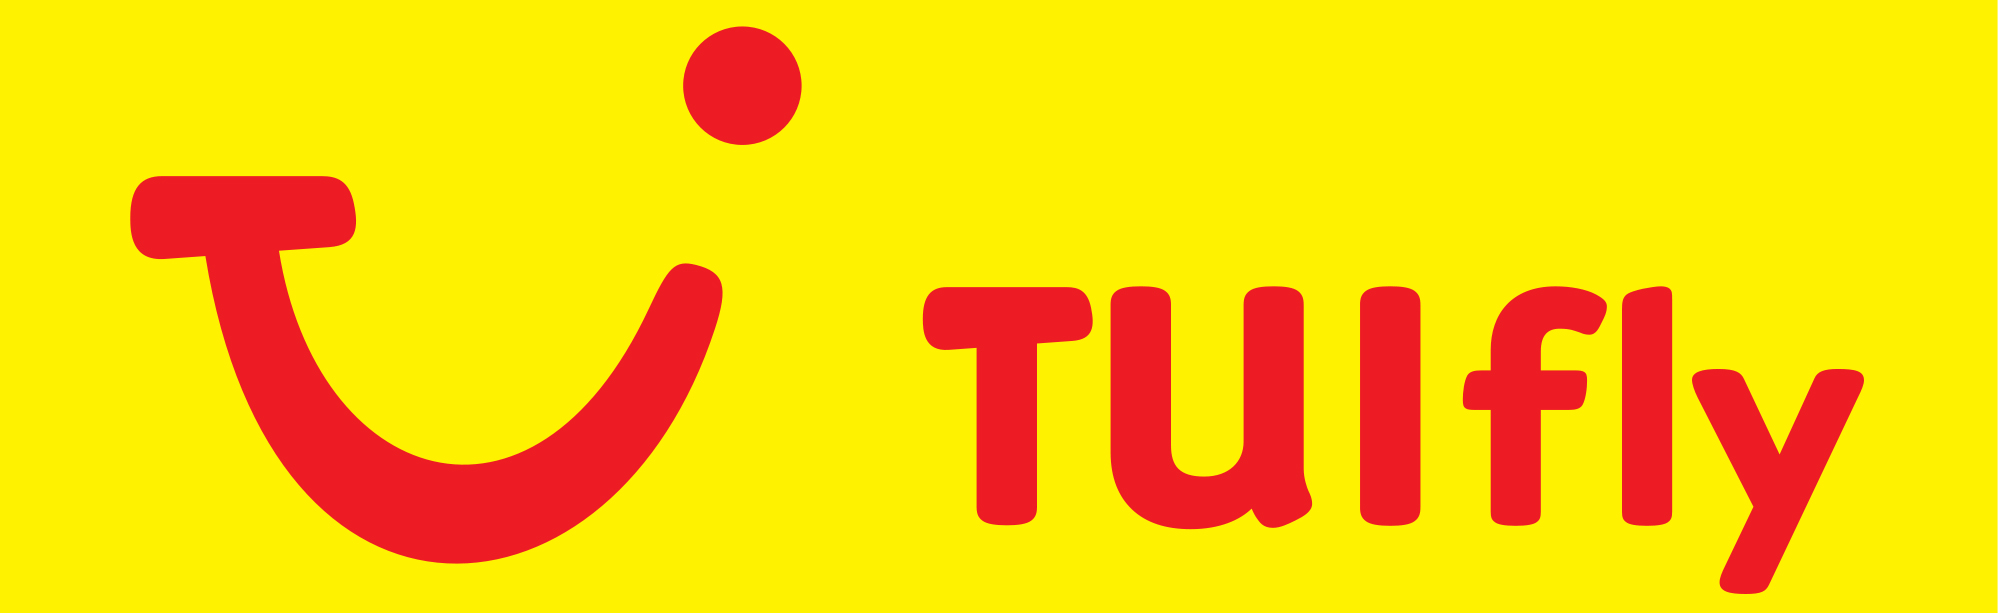 Tuifly_logo